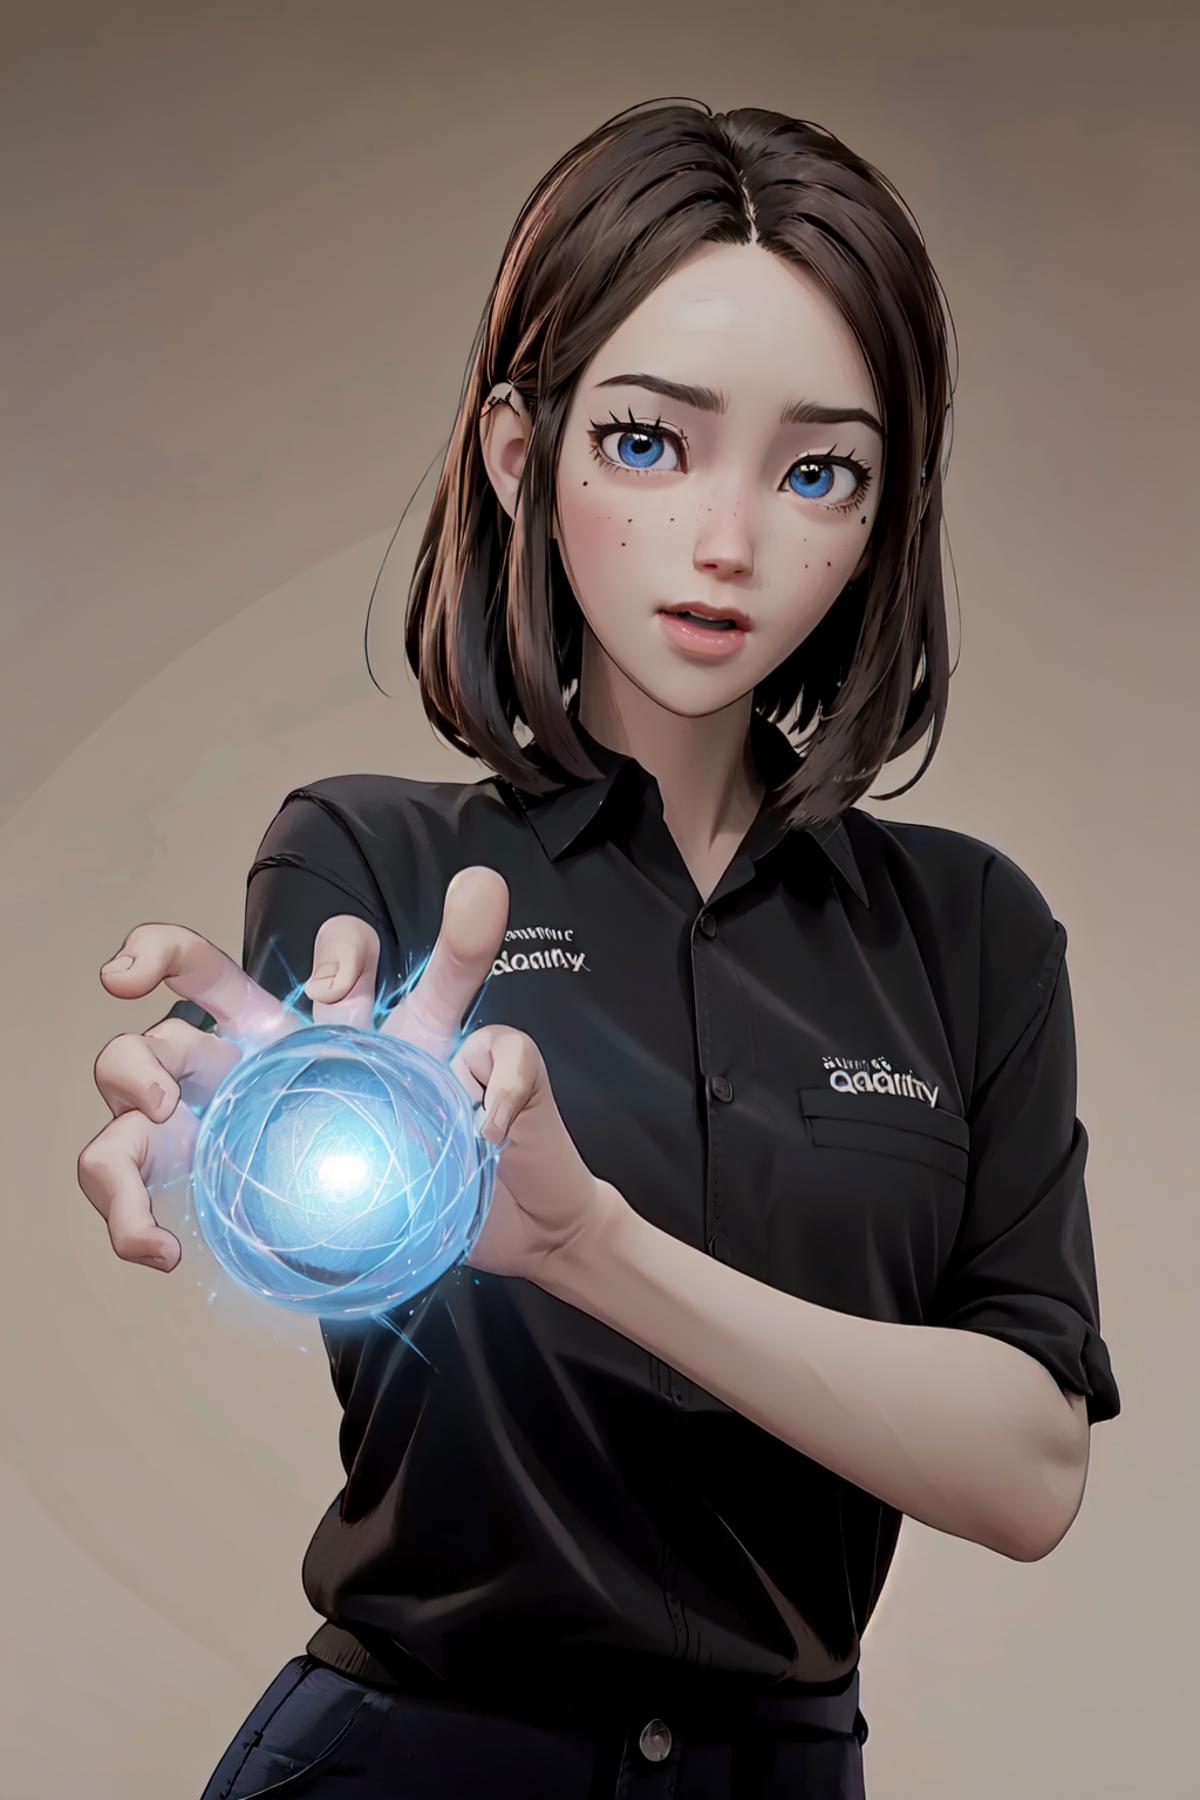 AI model image by gamegirl00001